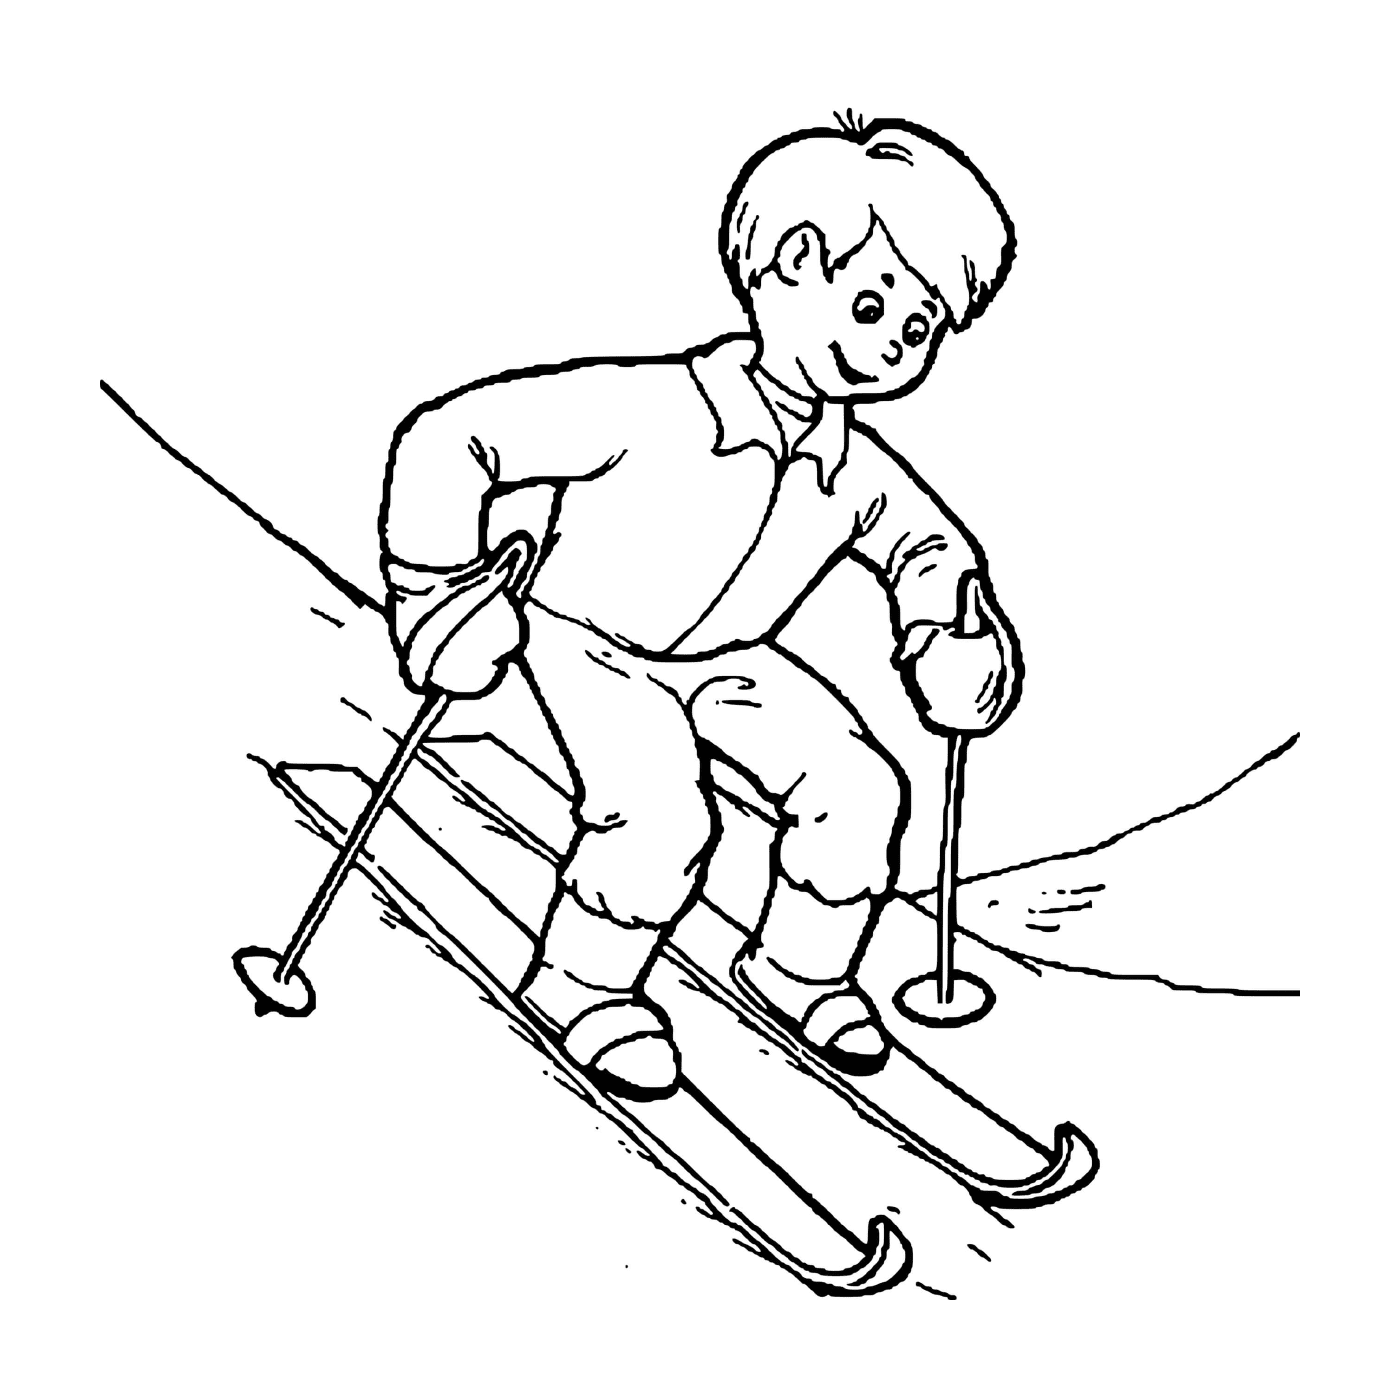  Kind lernt enthusiastisches Skifahren 